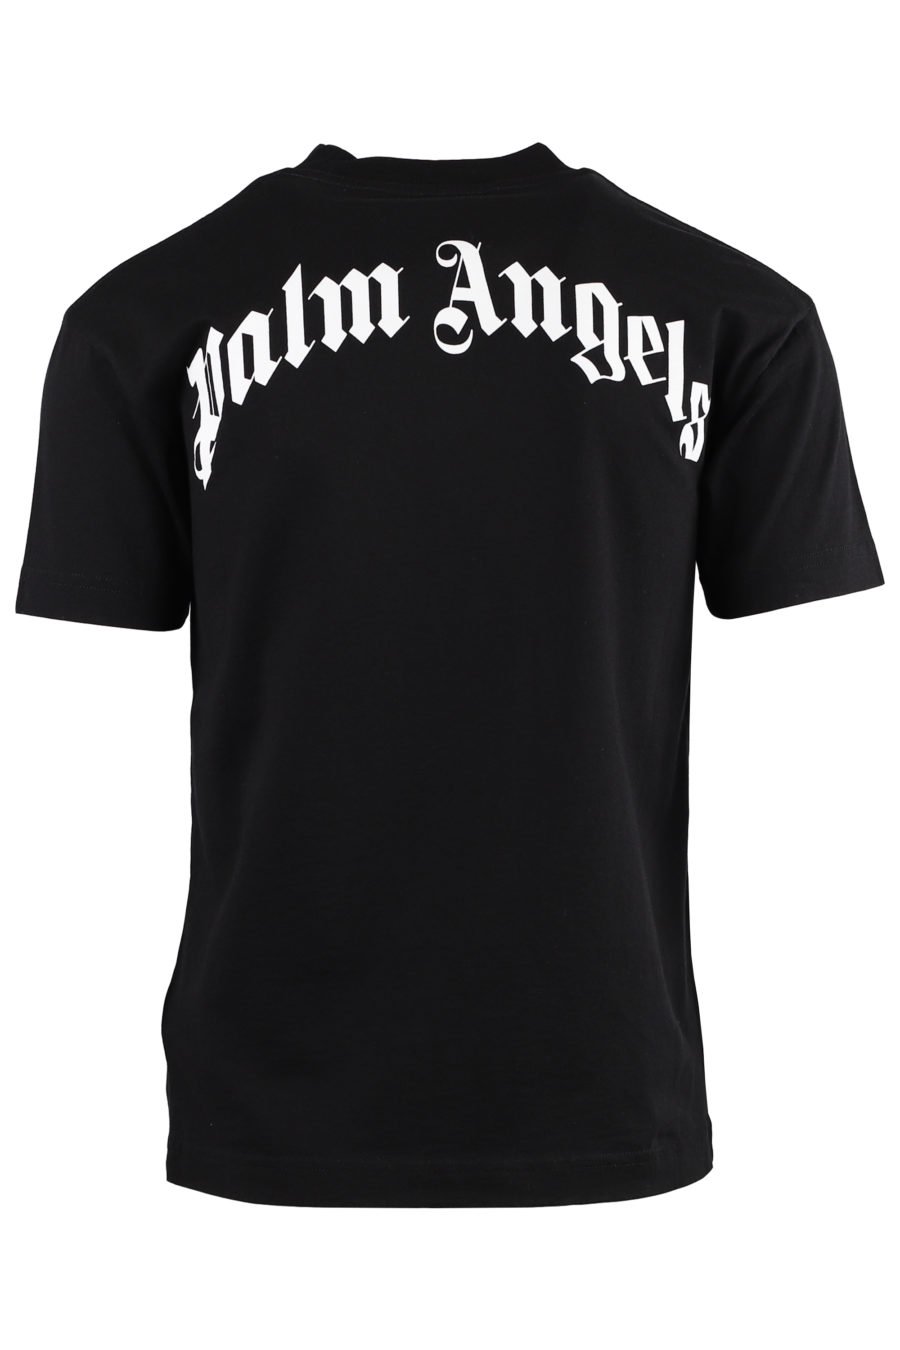 T-shirt preta com urso e logótipo nas costas - IMG 1329